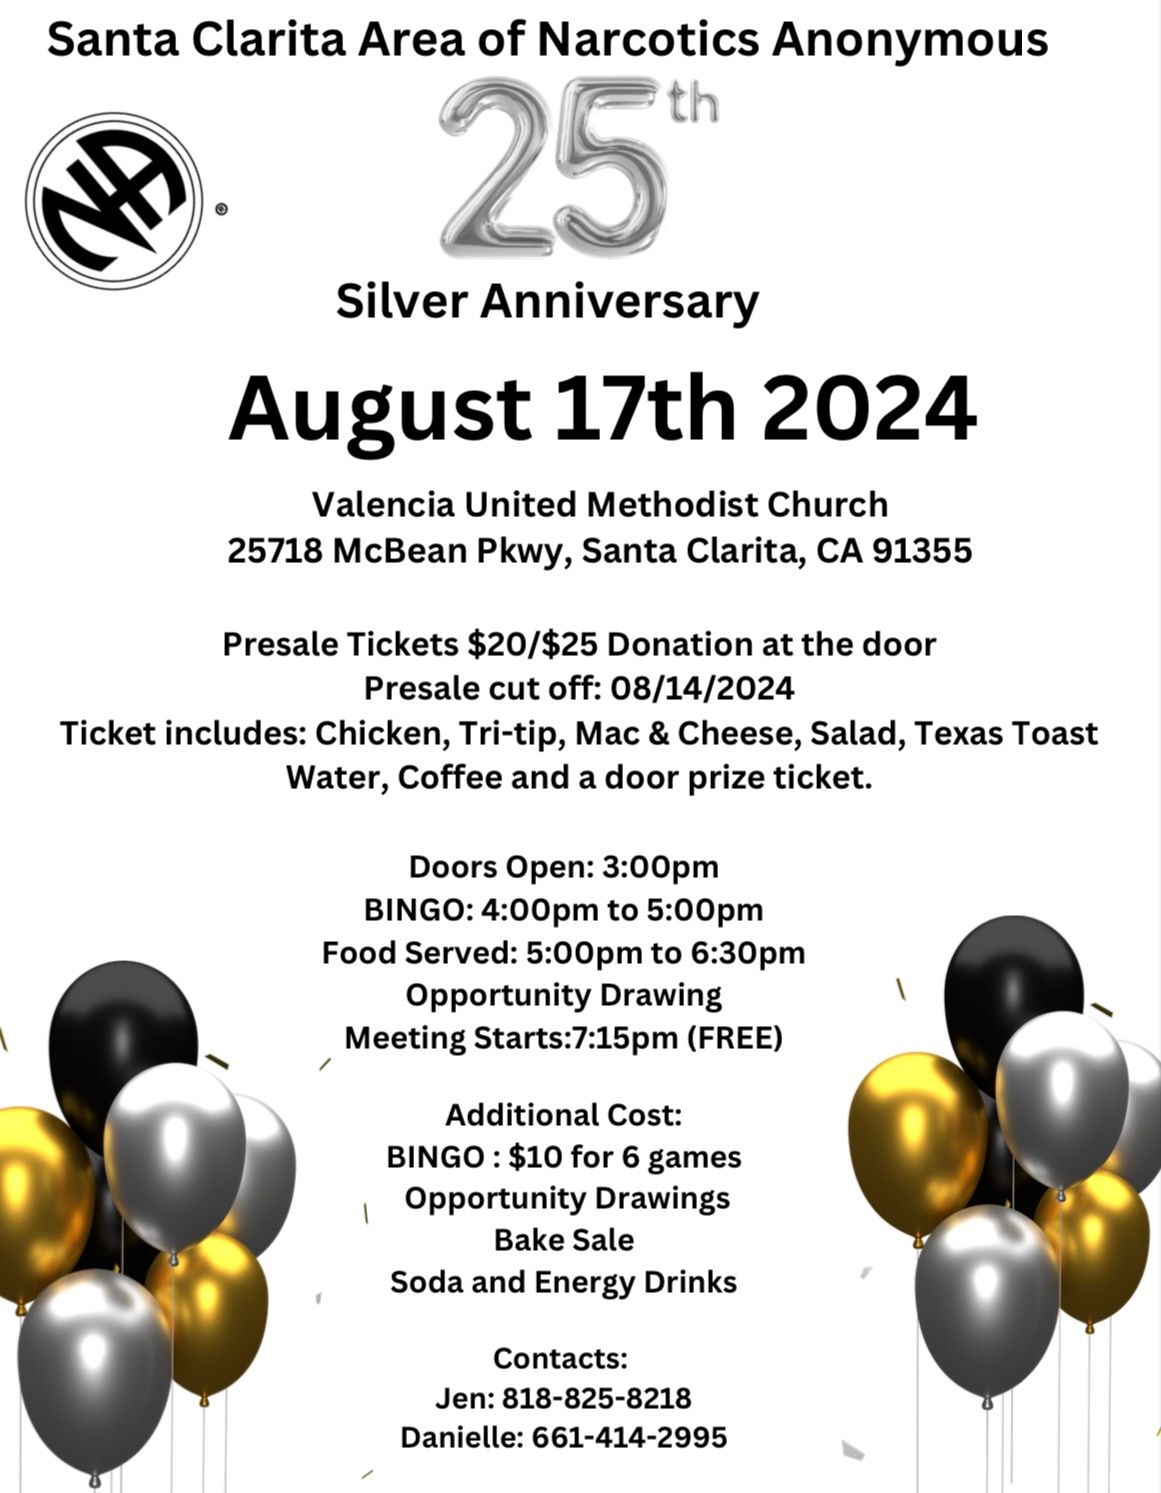 Santa Clarita Area of N.A. 25th  Silver  Anniversary Event